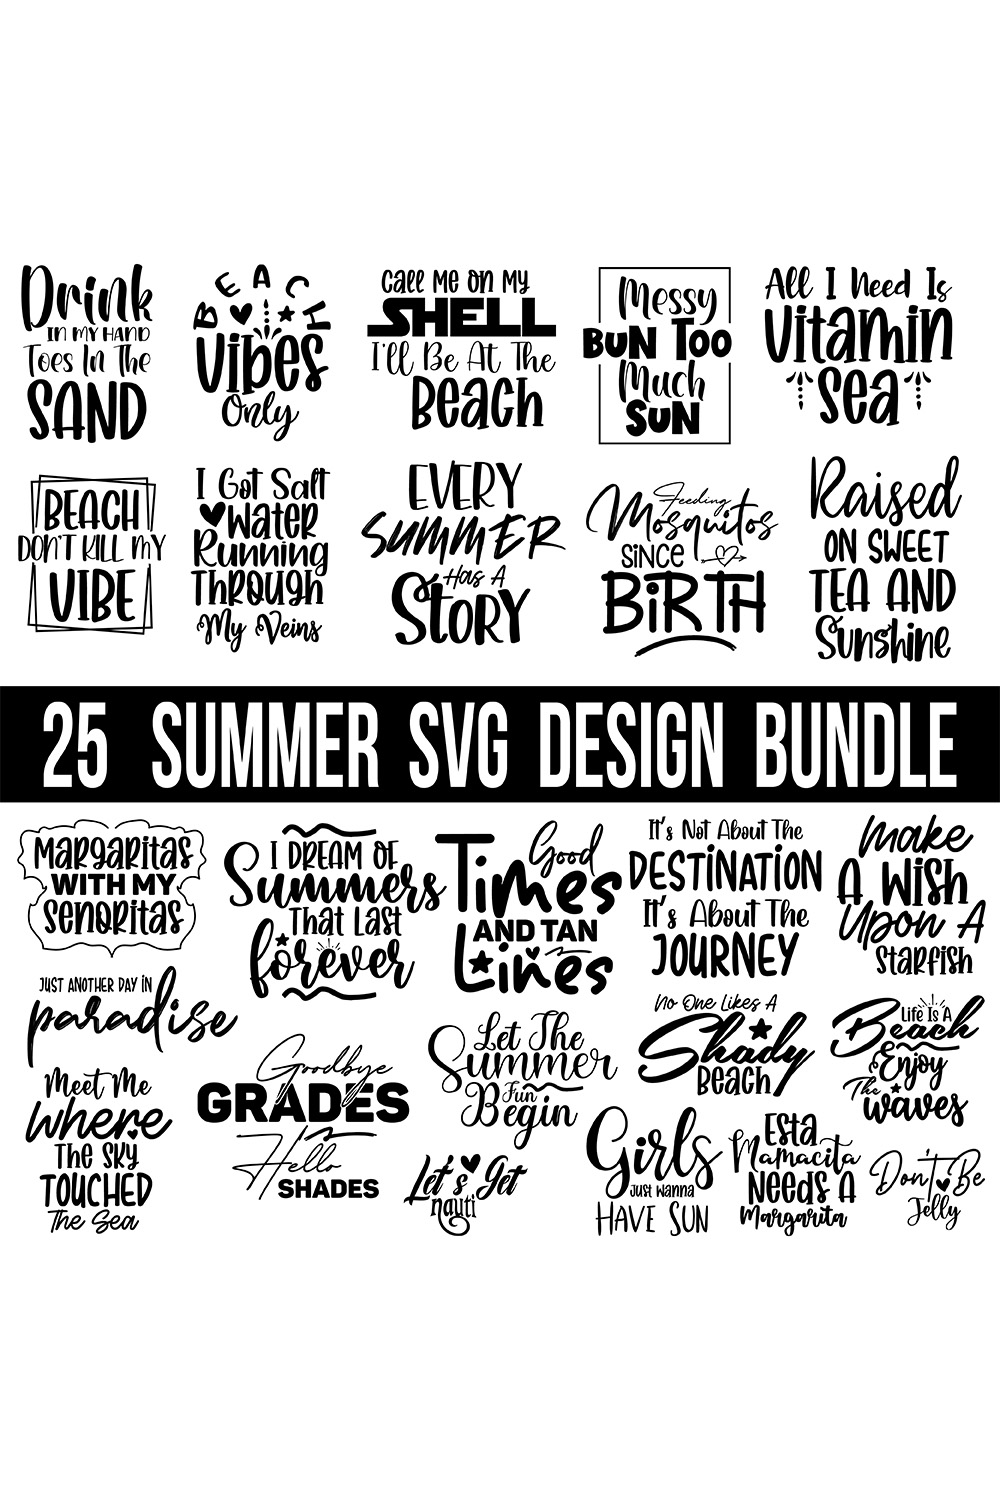 Summer SVG Bundle pinterest preview image.